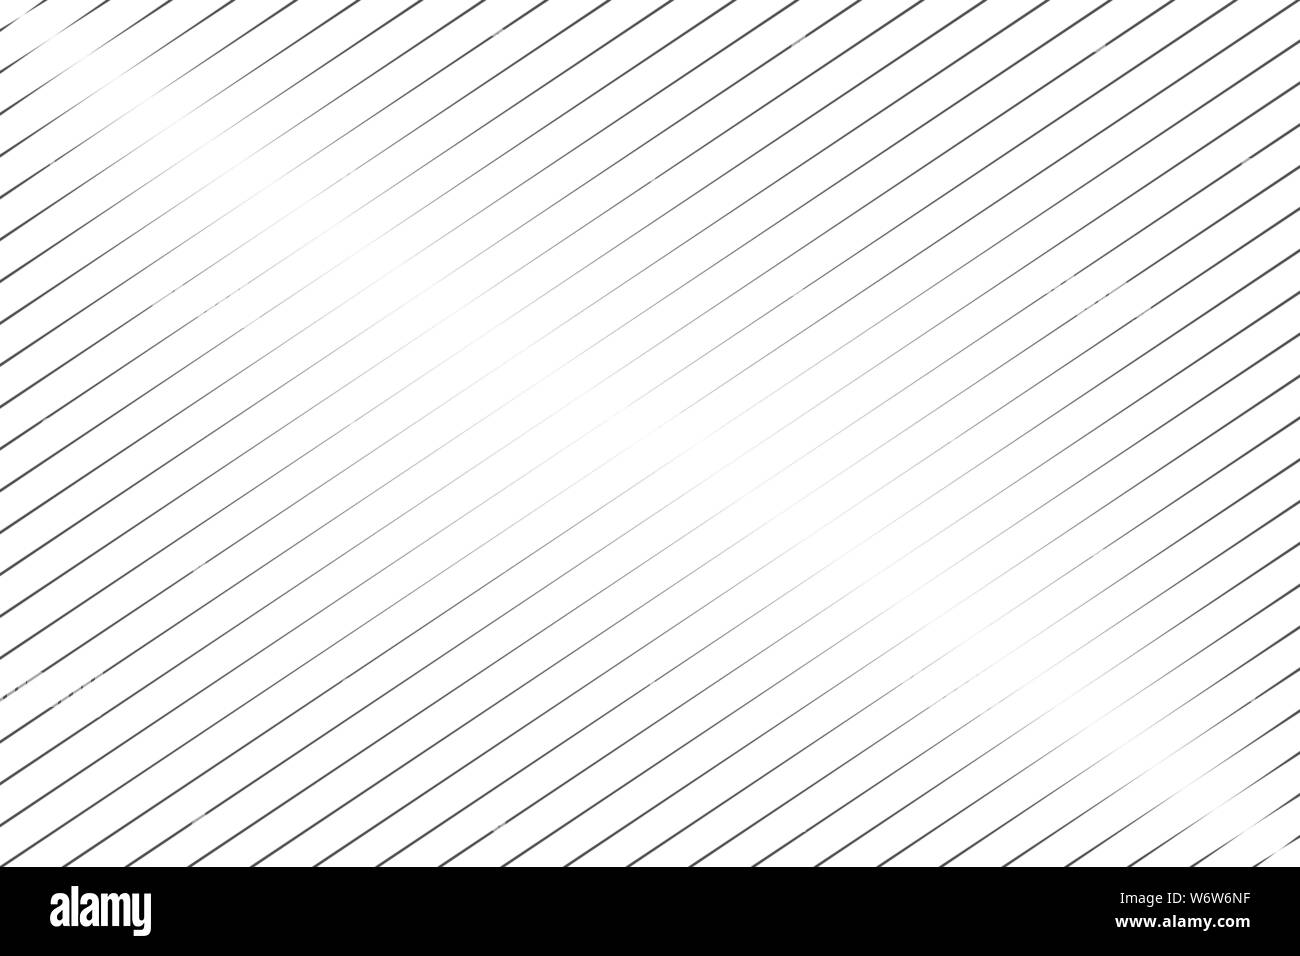 Résumé des lignes obliques noires sur fond blanc vector illustration Illustration de Vecteur